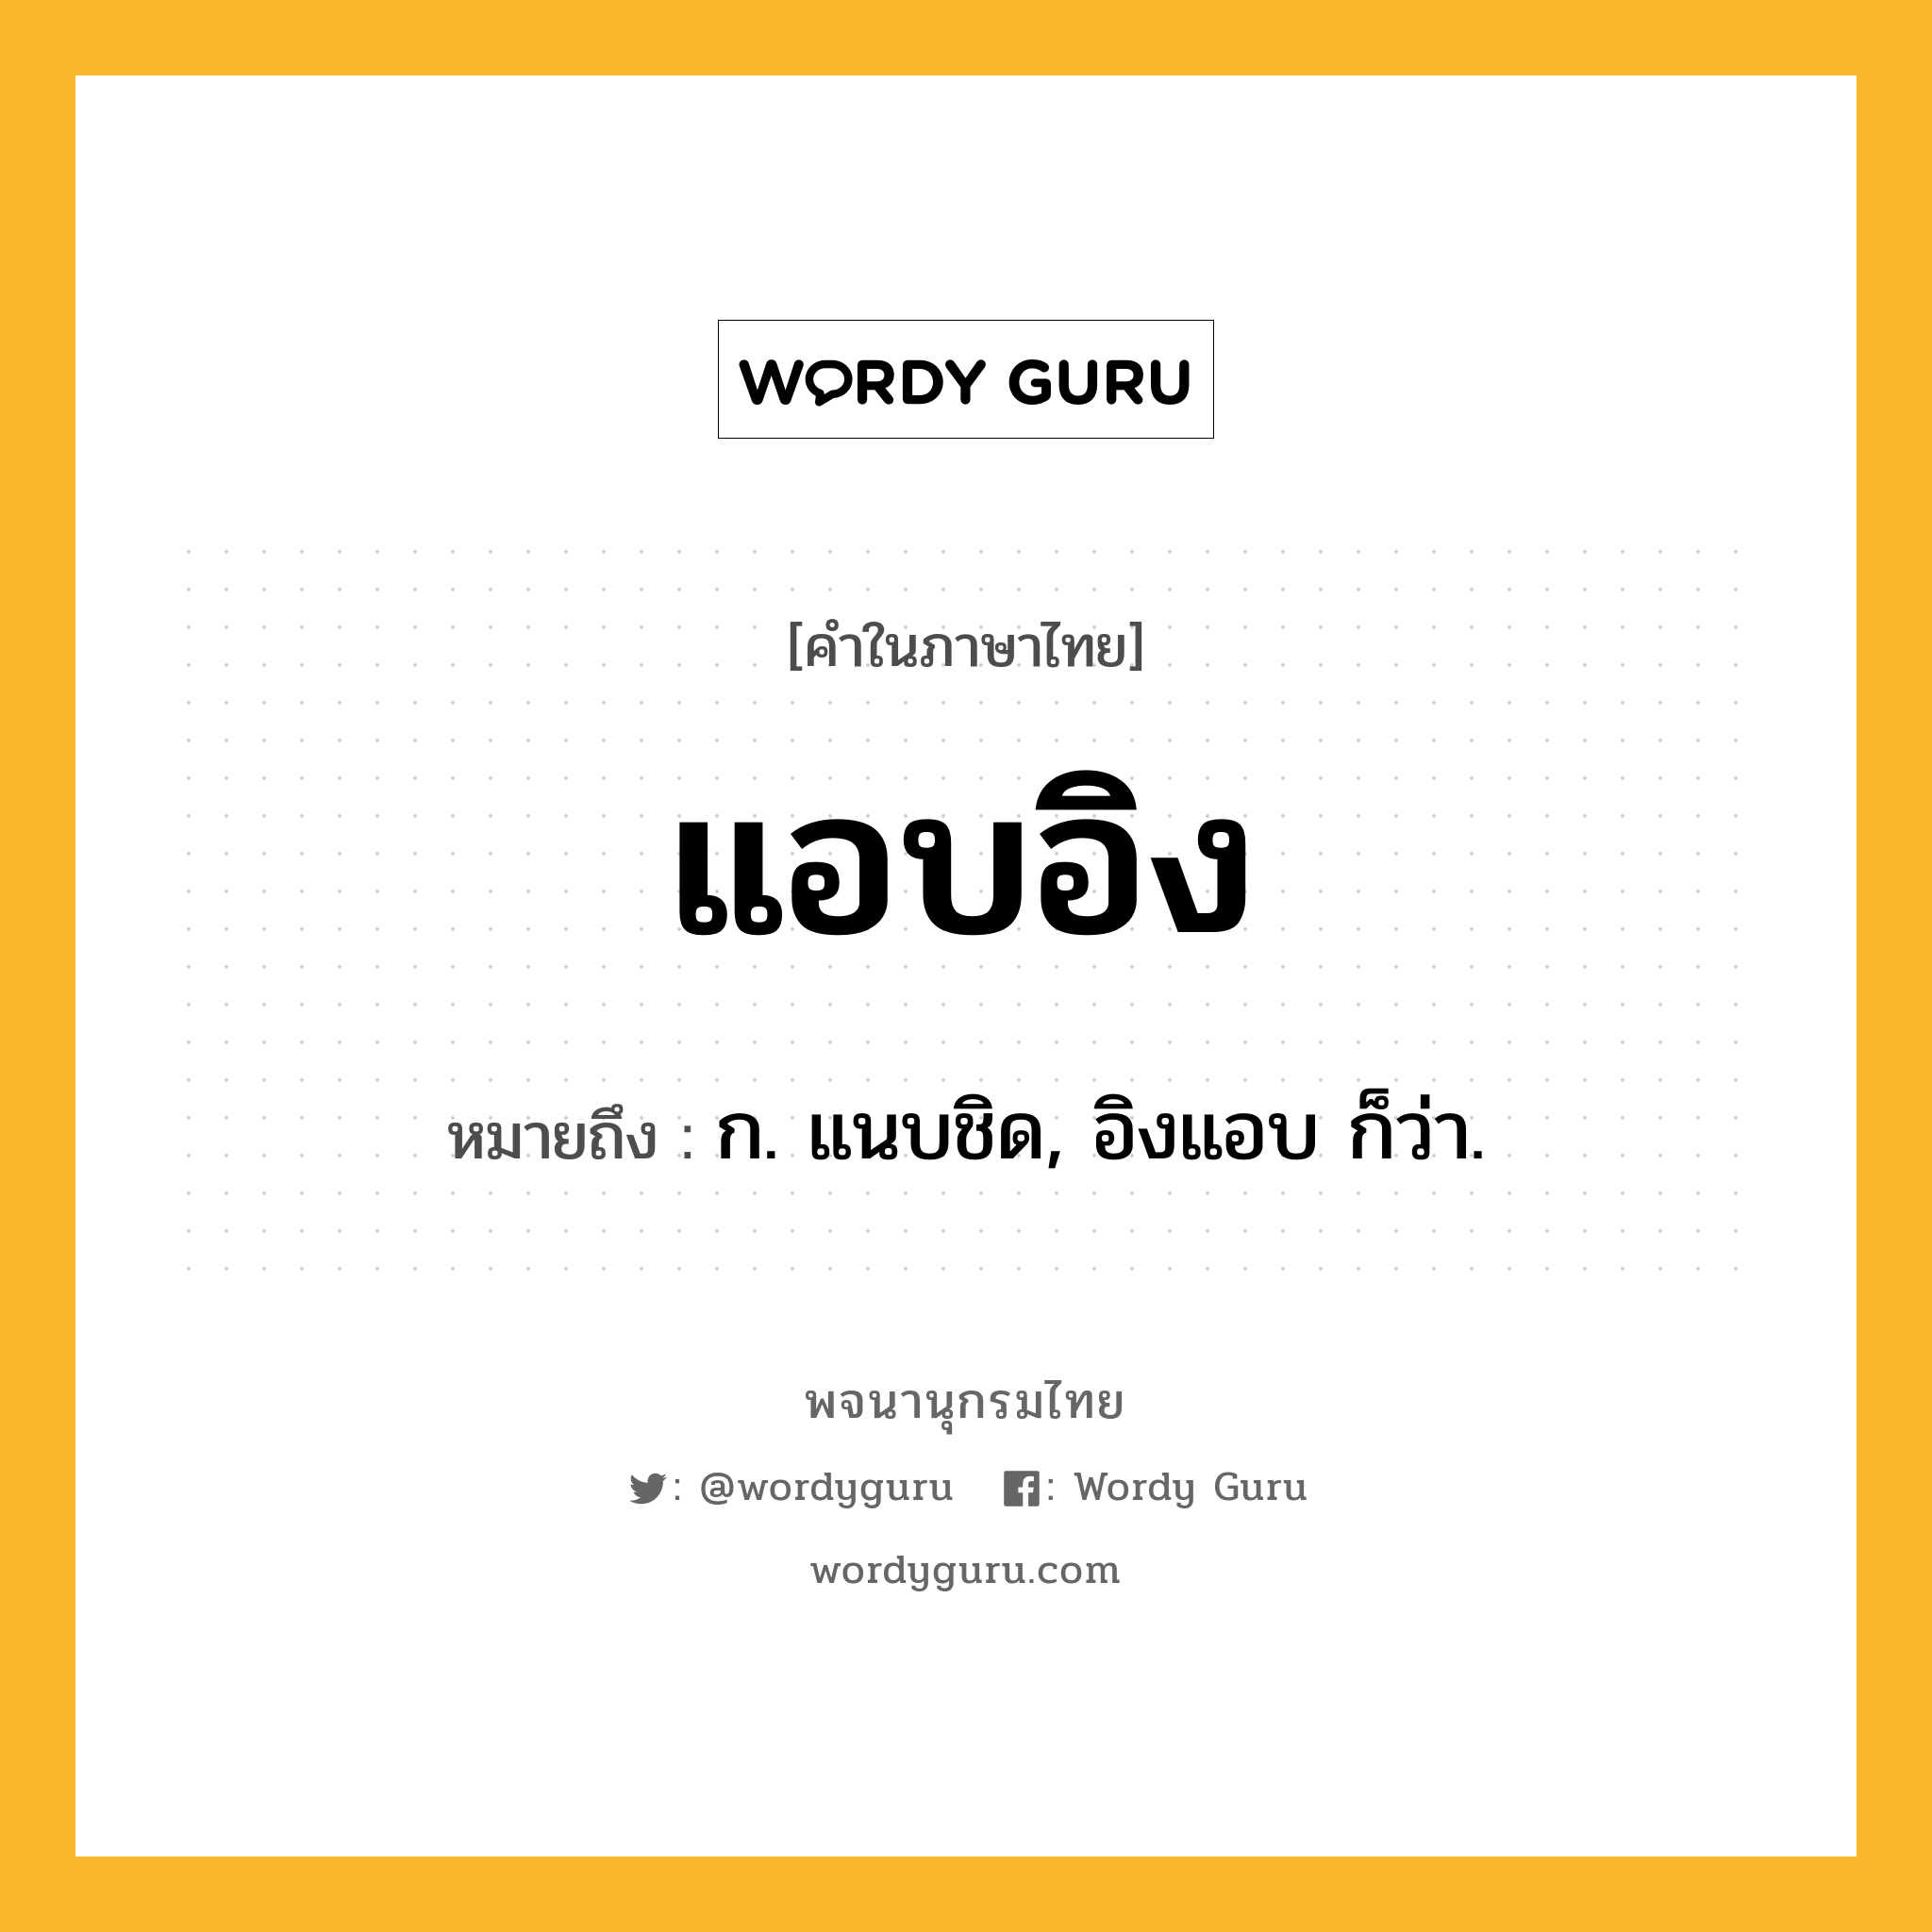 แอบอิง ความหมาย หมายถึงอะไร?, คำในภาษาไทย แอบอิง หมายถึง ก. แนบชิด, อิงแอบ ก็ว่า.